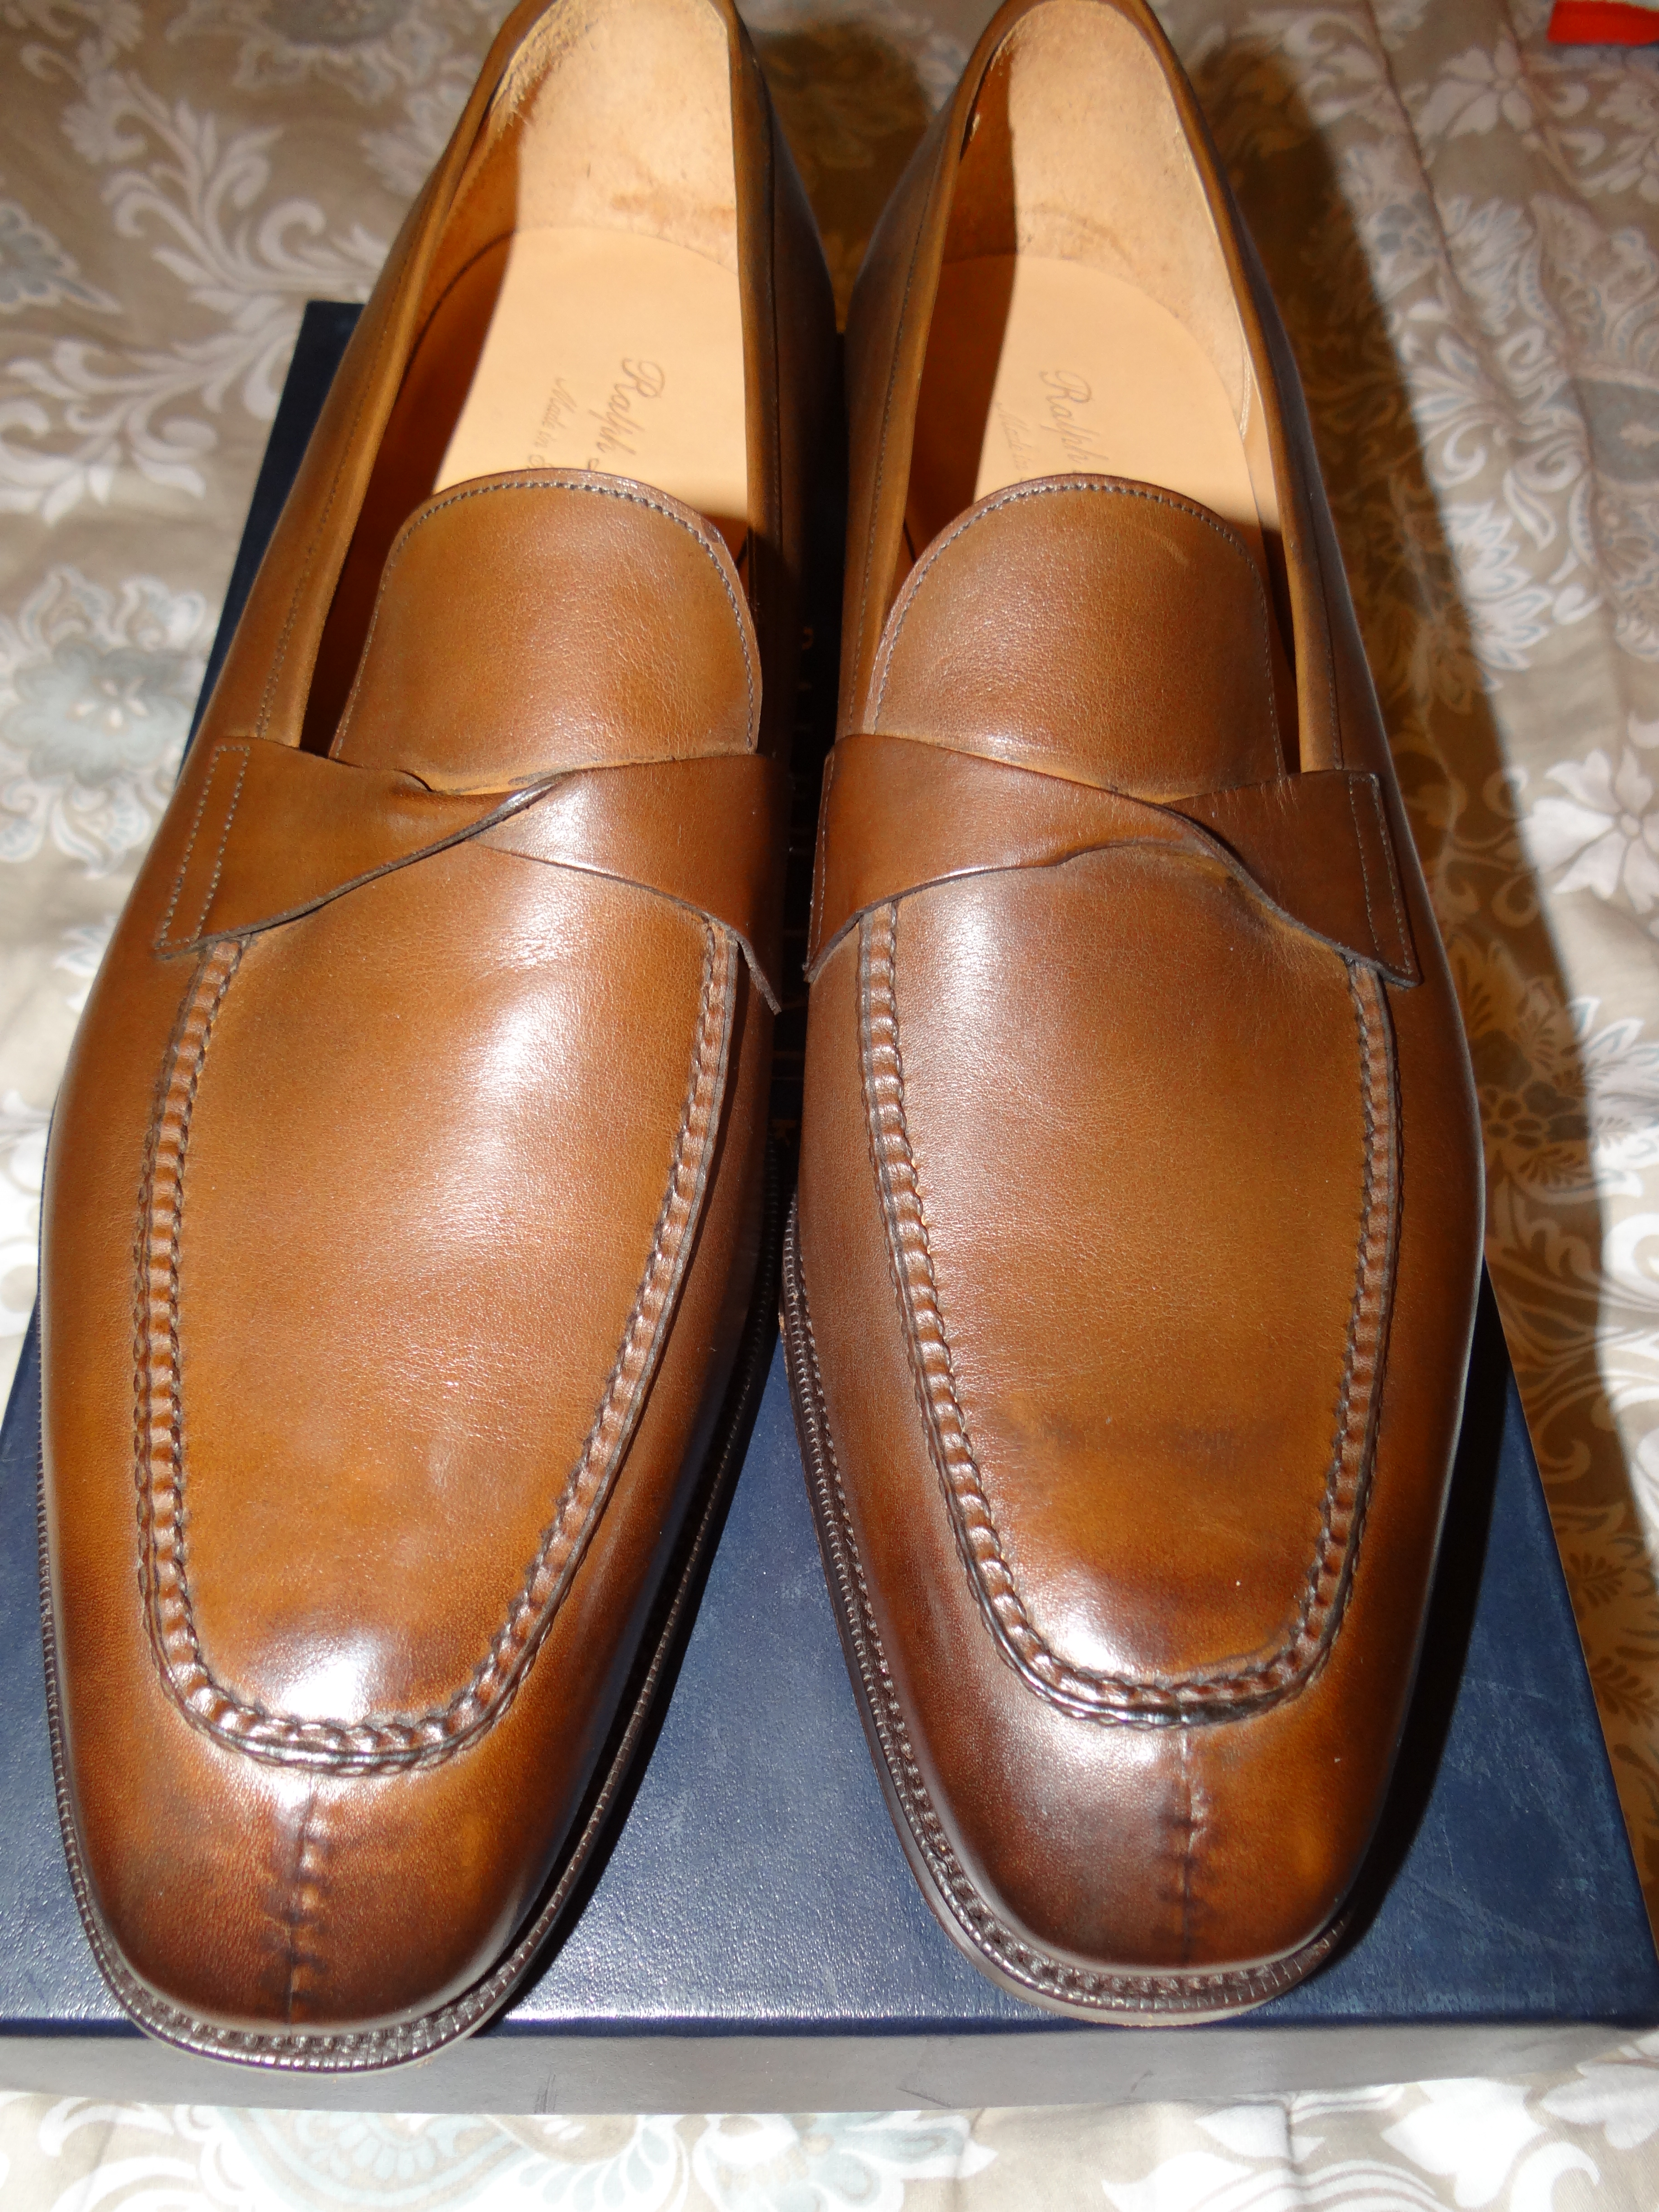 6/30 DROP! NIB Shoes & Boots from Gaziano & Girling, Edward Green ...